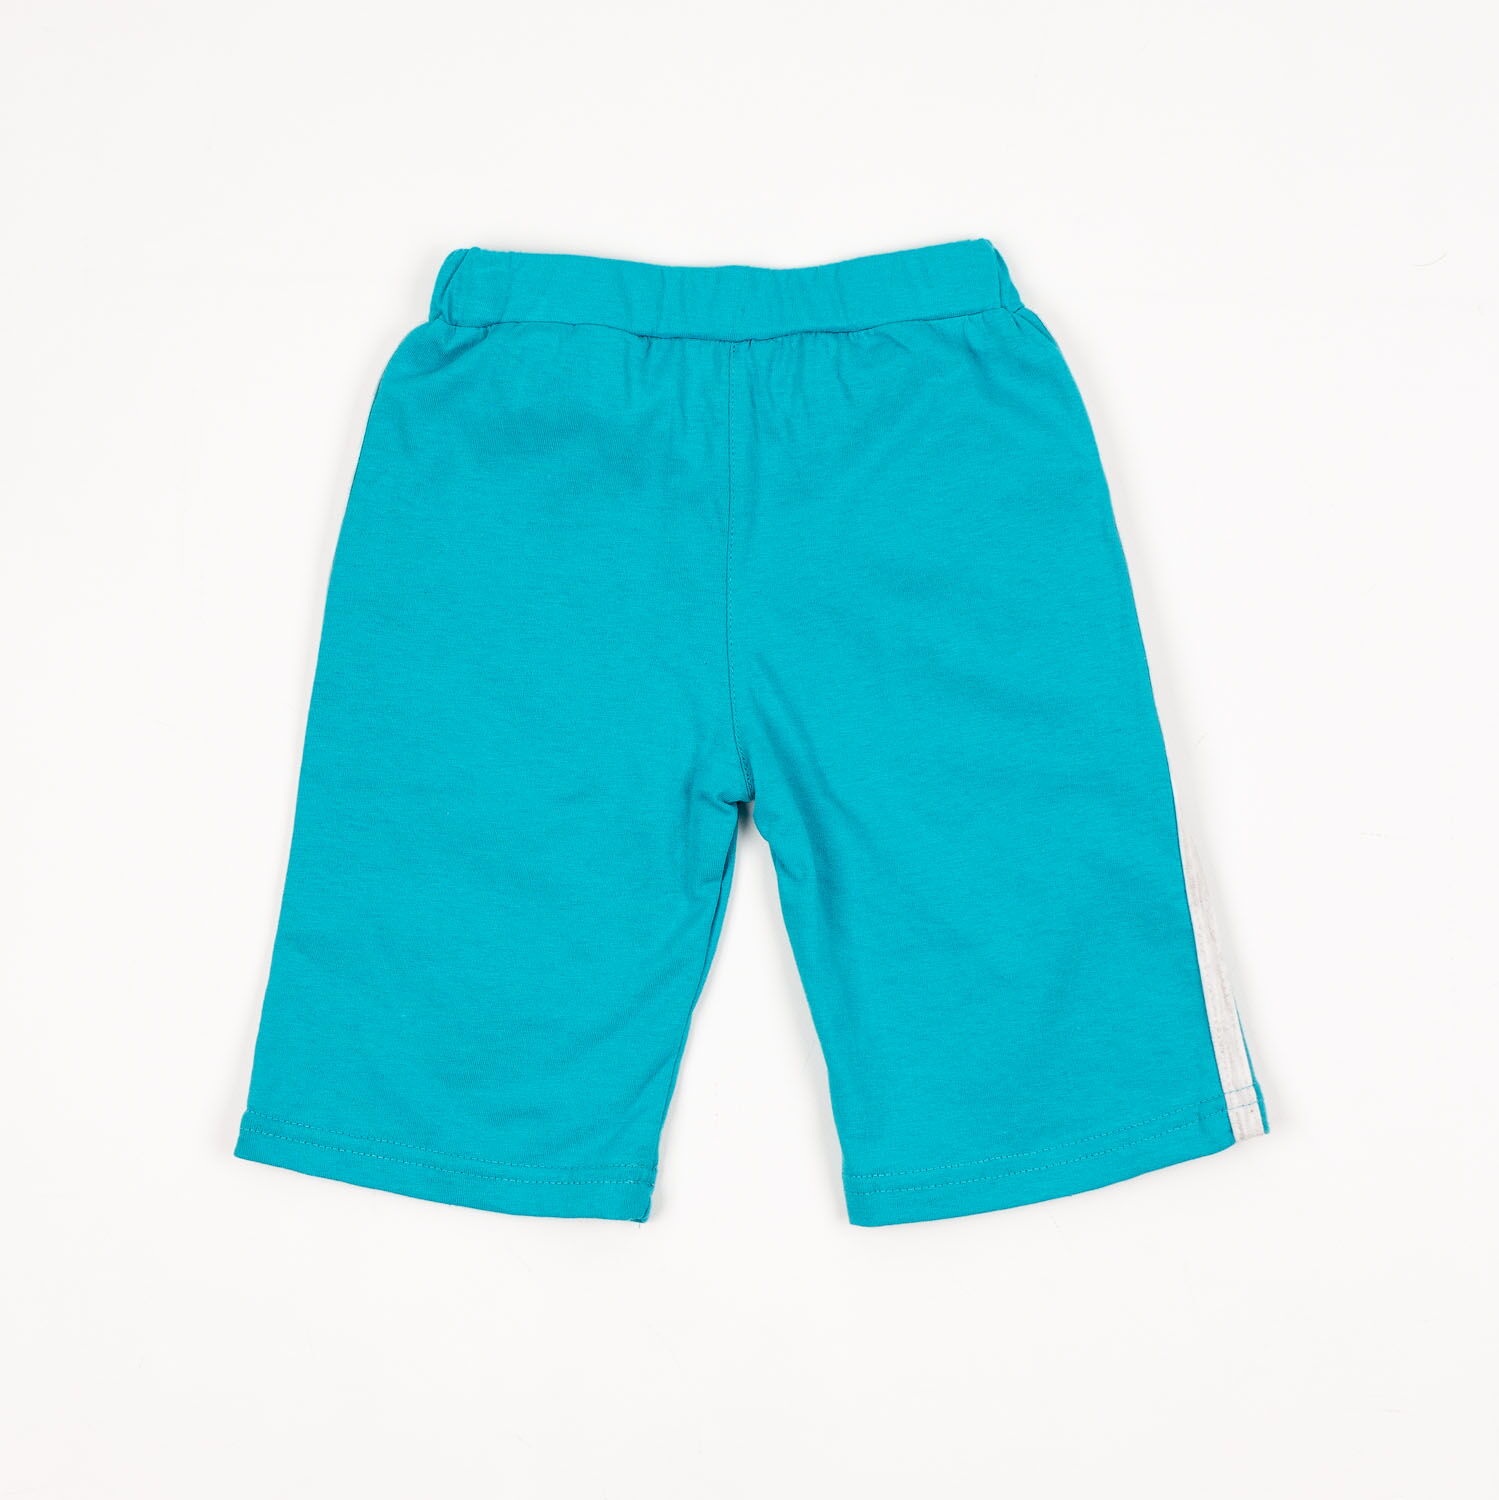 Комплект для мальчика (футболка+шорты) Фламинго голубой 905-110 - размеры